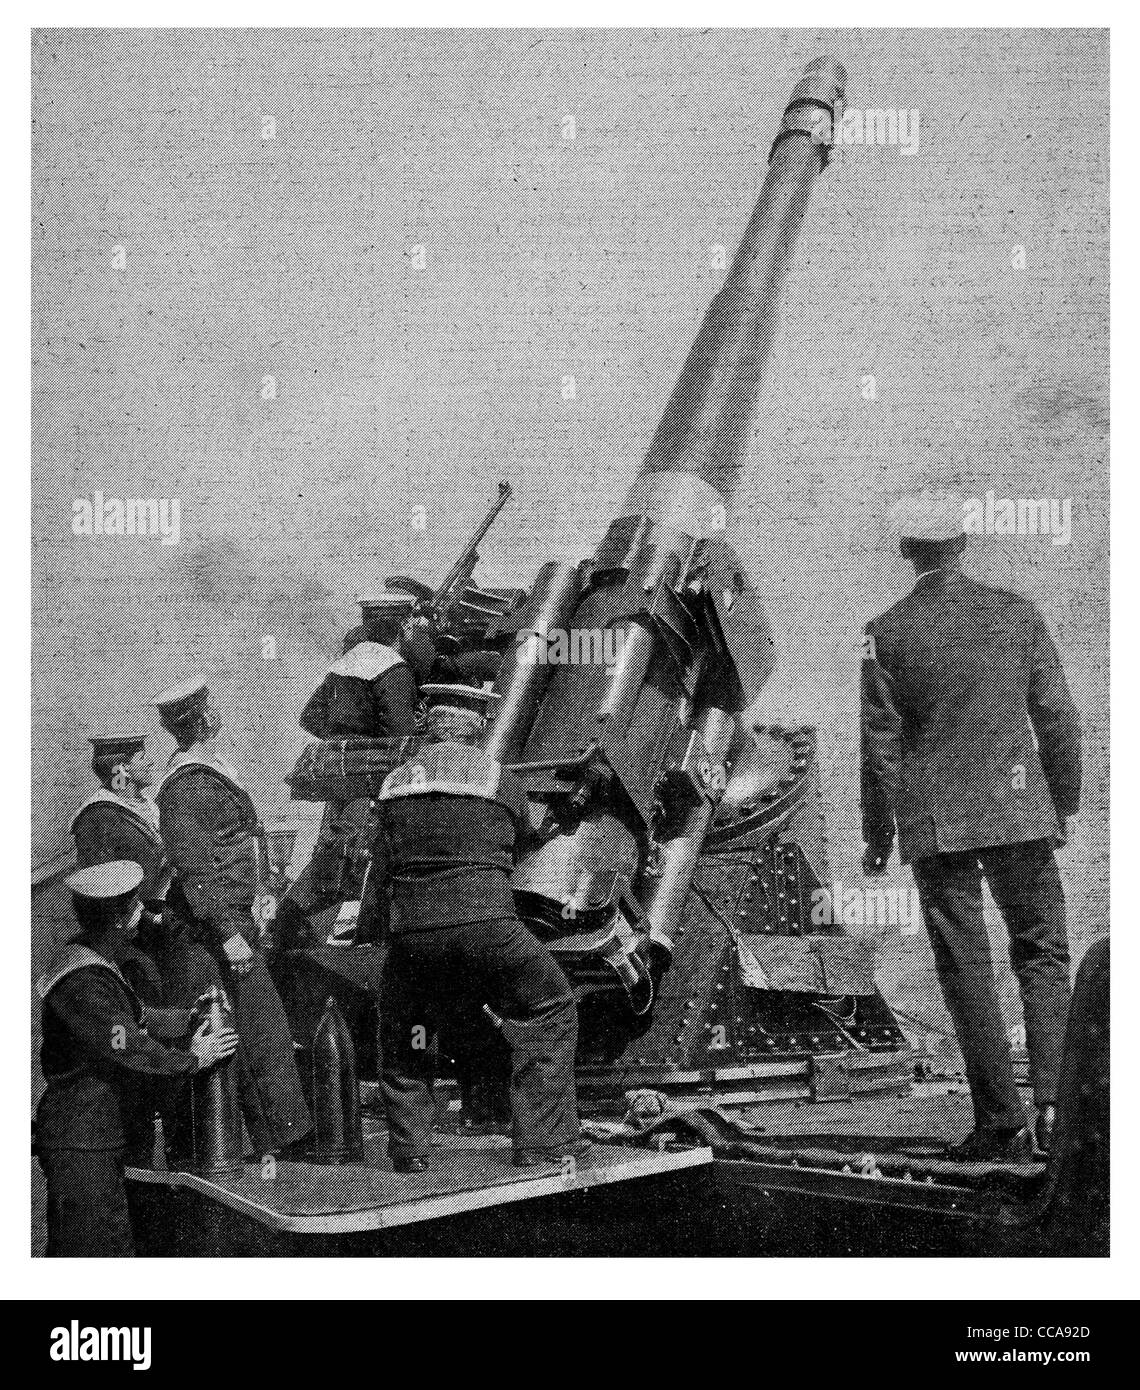 1917 Large Anti aircraft British coast artillery fire firing gunner crew officer shells shell loading breech gunners cannon Stock Photo